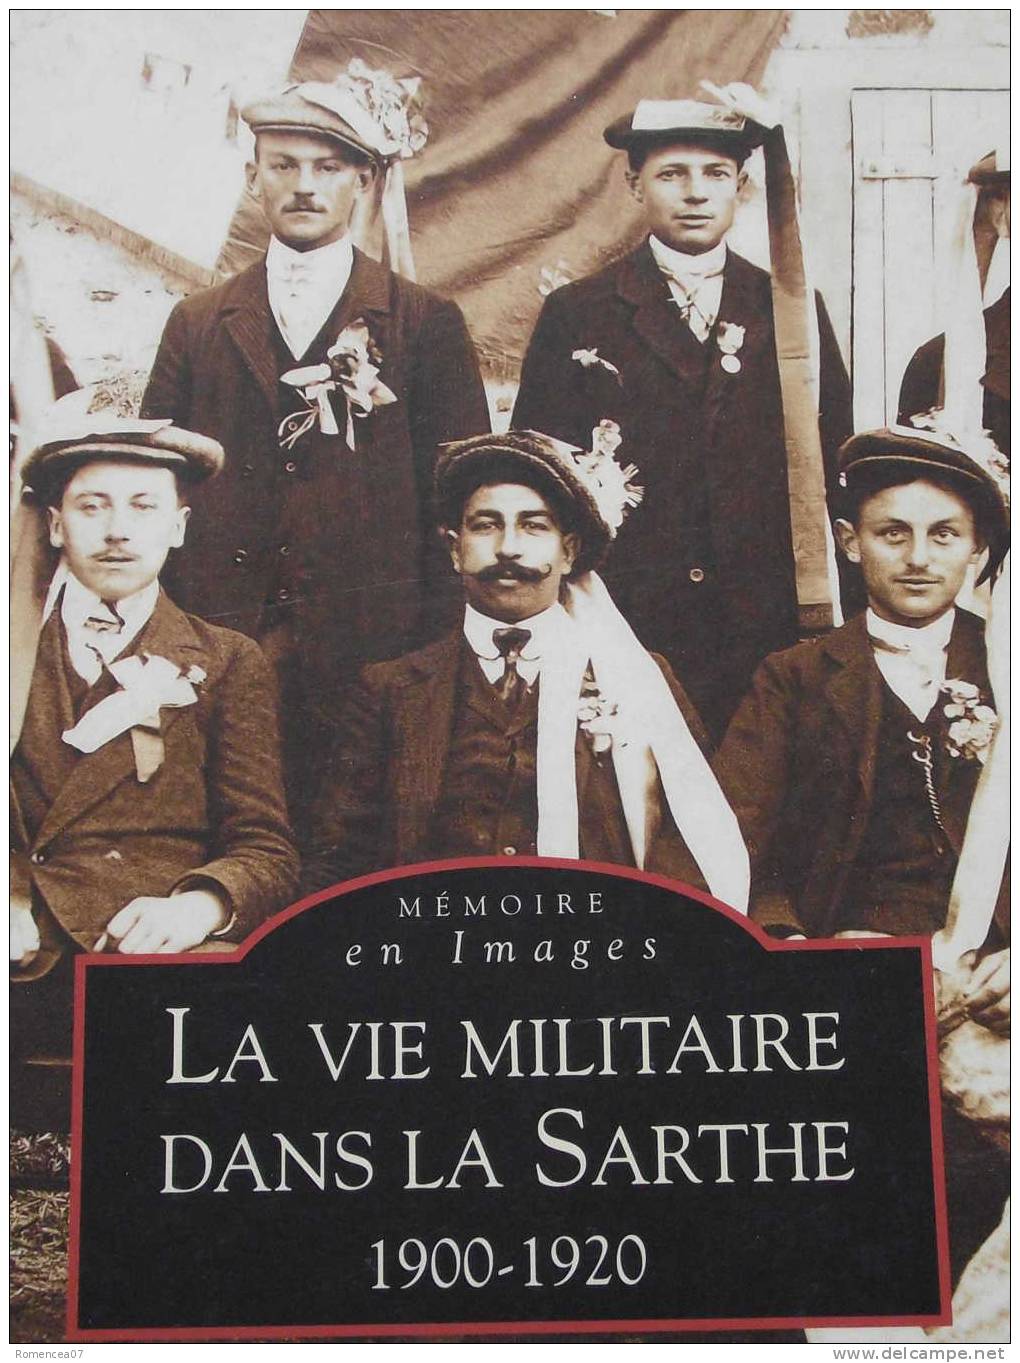 La VIE MILITAIRE Dans La SARTHE - 1900-1920 - André Ligné - Coll. Mémoire En Images - TOP ! - Pays De Loire